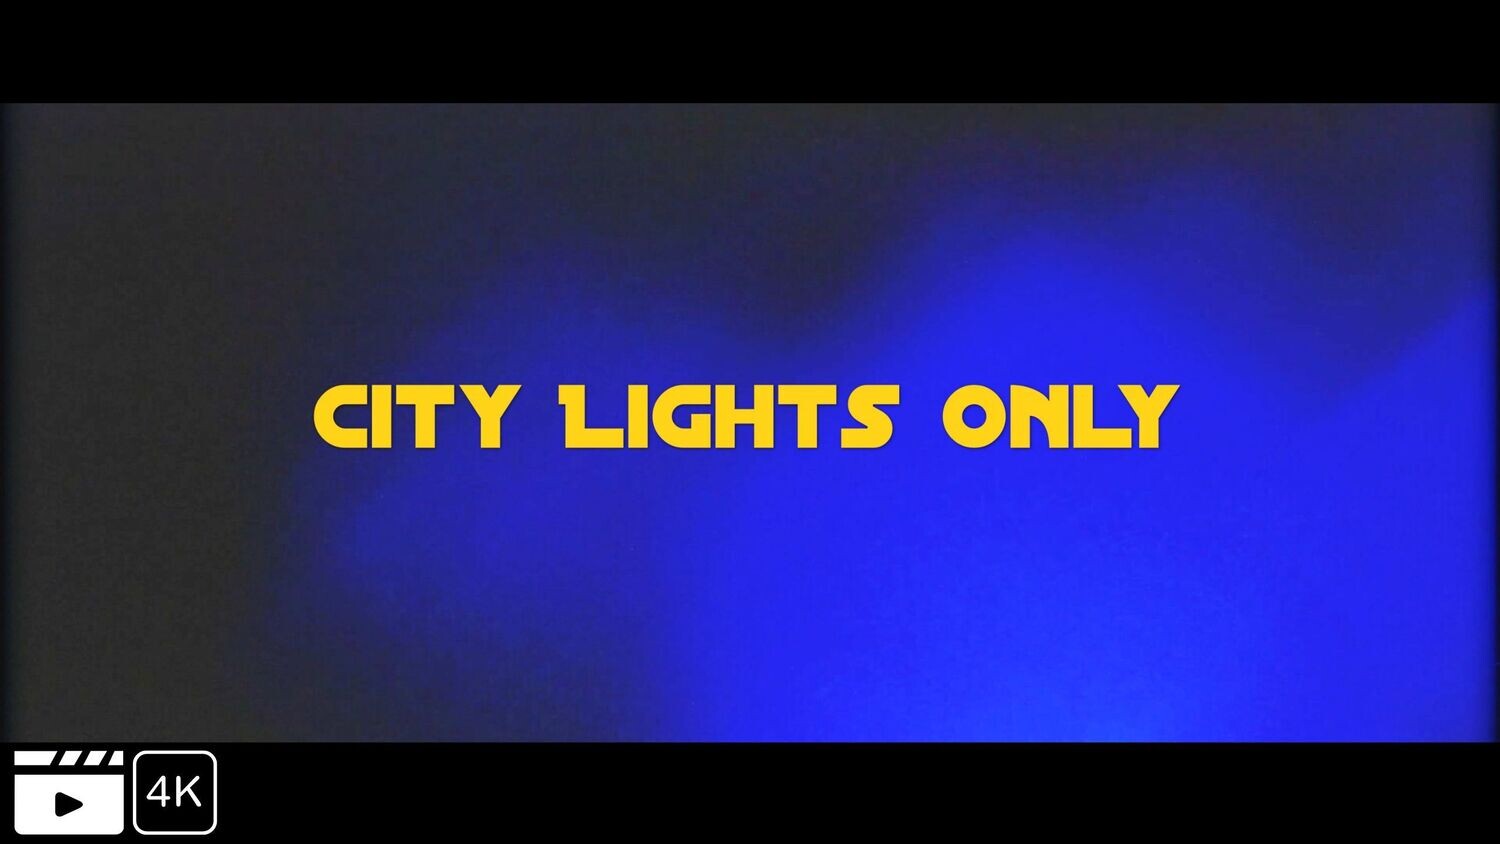 City Lights only Teil 2- Tutorial Peoplefotografie mit vorhandenem Licht bei Dunkelheit, Video zum download in 4K + Bilder aus dem Video als RAW Dateien